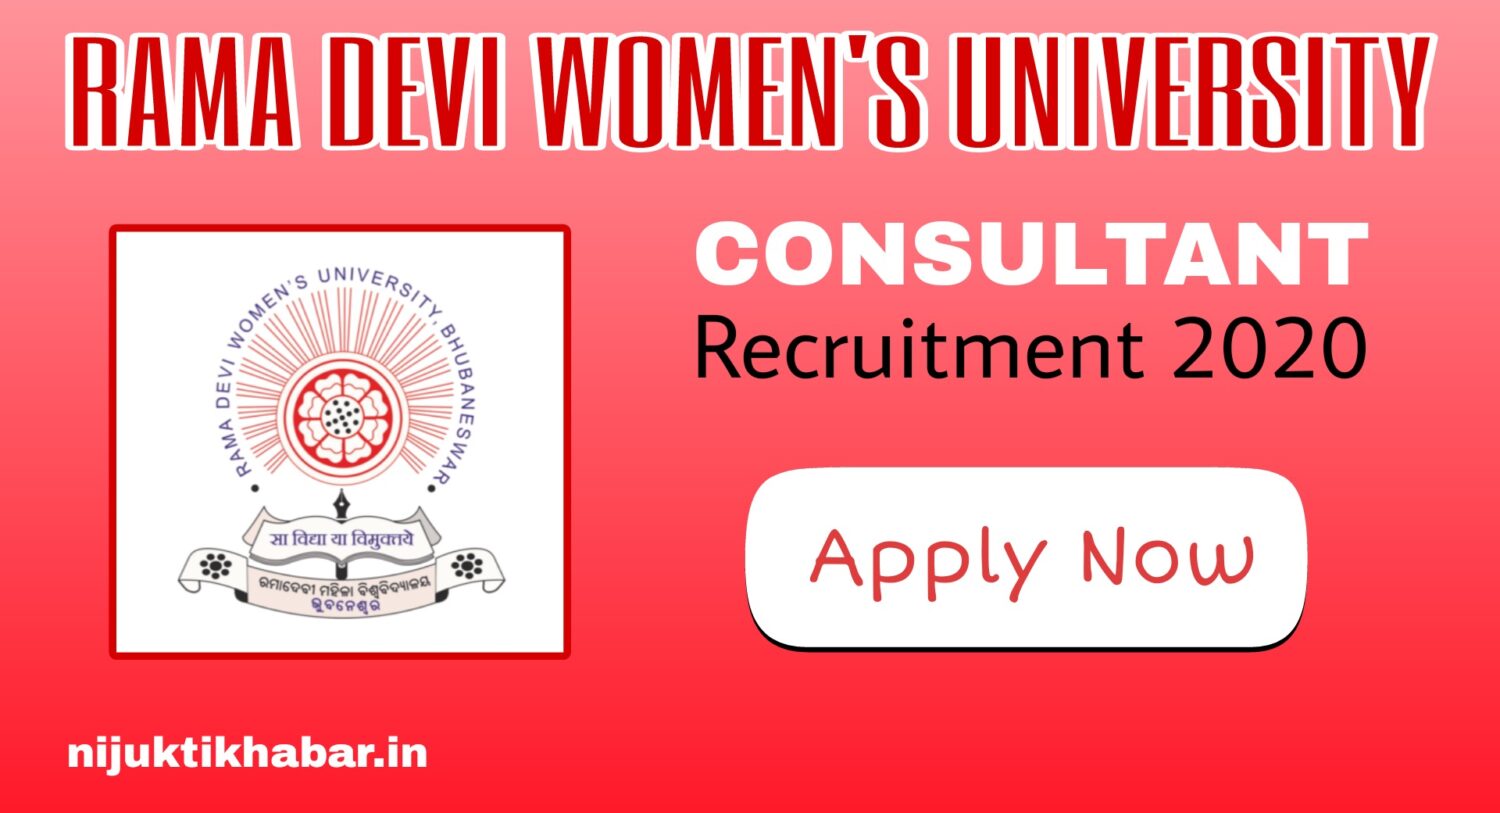 Rama Devi Women’s University Recruitment 2020 – Jobs in Odisha